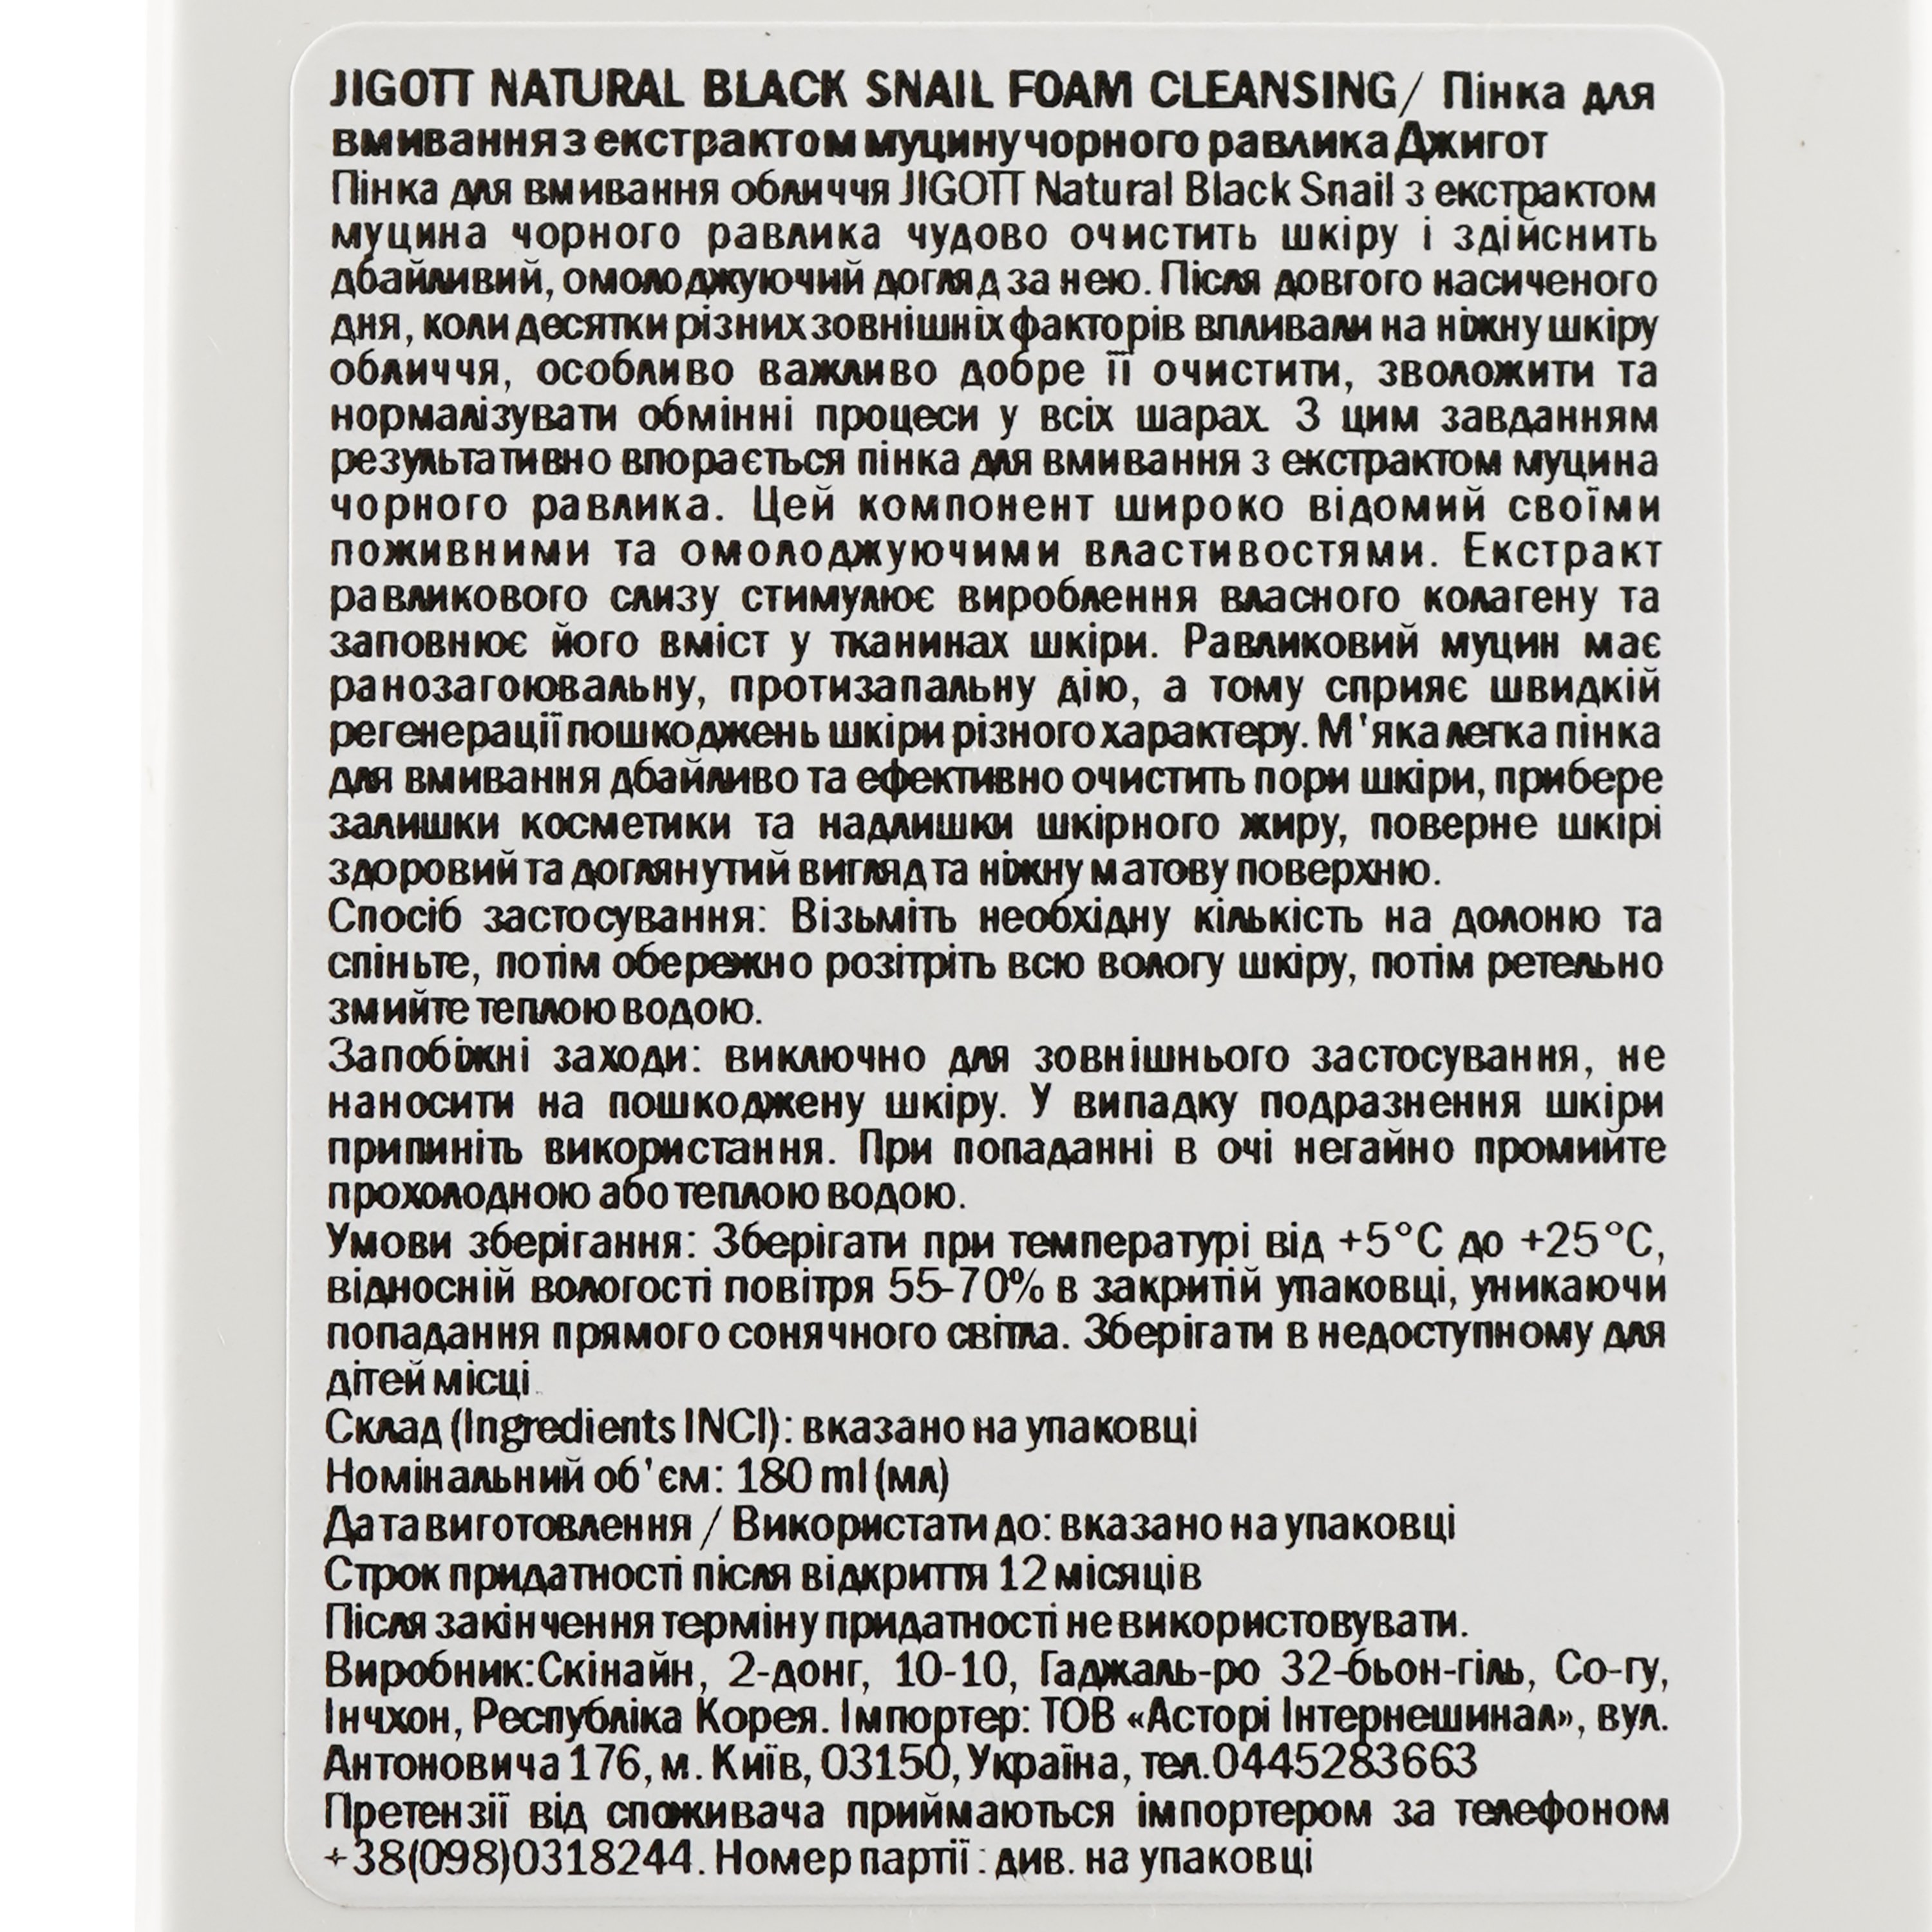 Пенка для умывания Jigott Natural Black SnaiL Foam Cleansing Муцин Улитки, 180 мл - фото 3